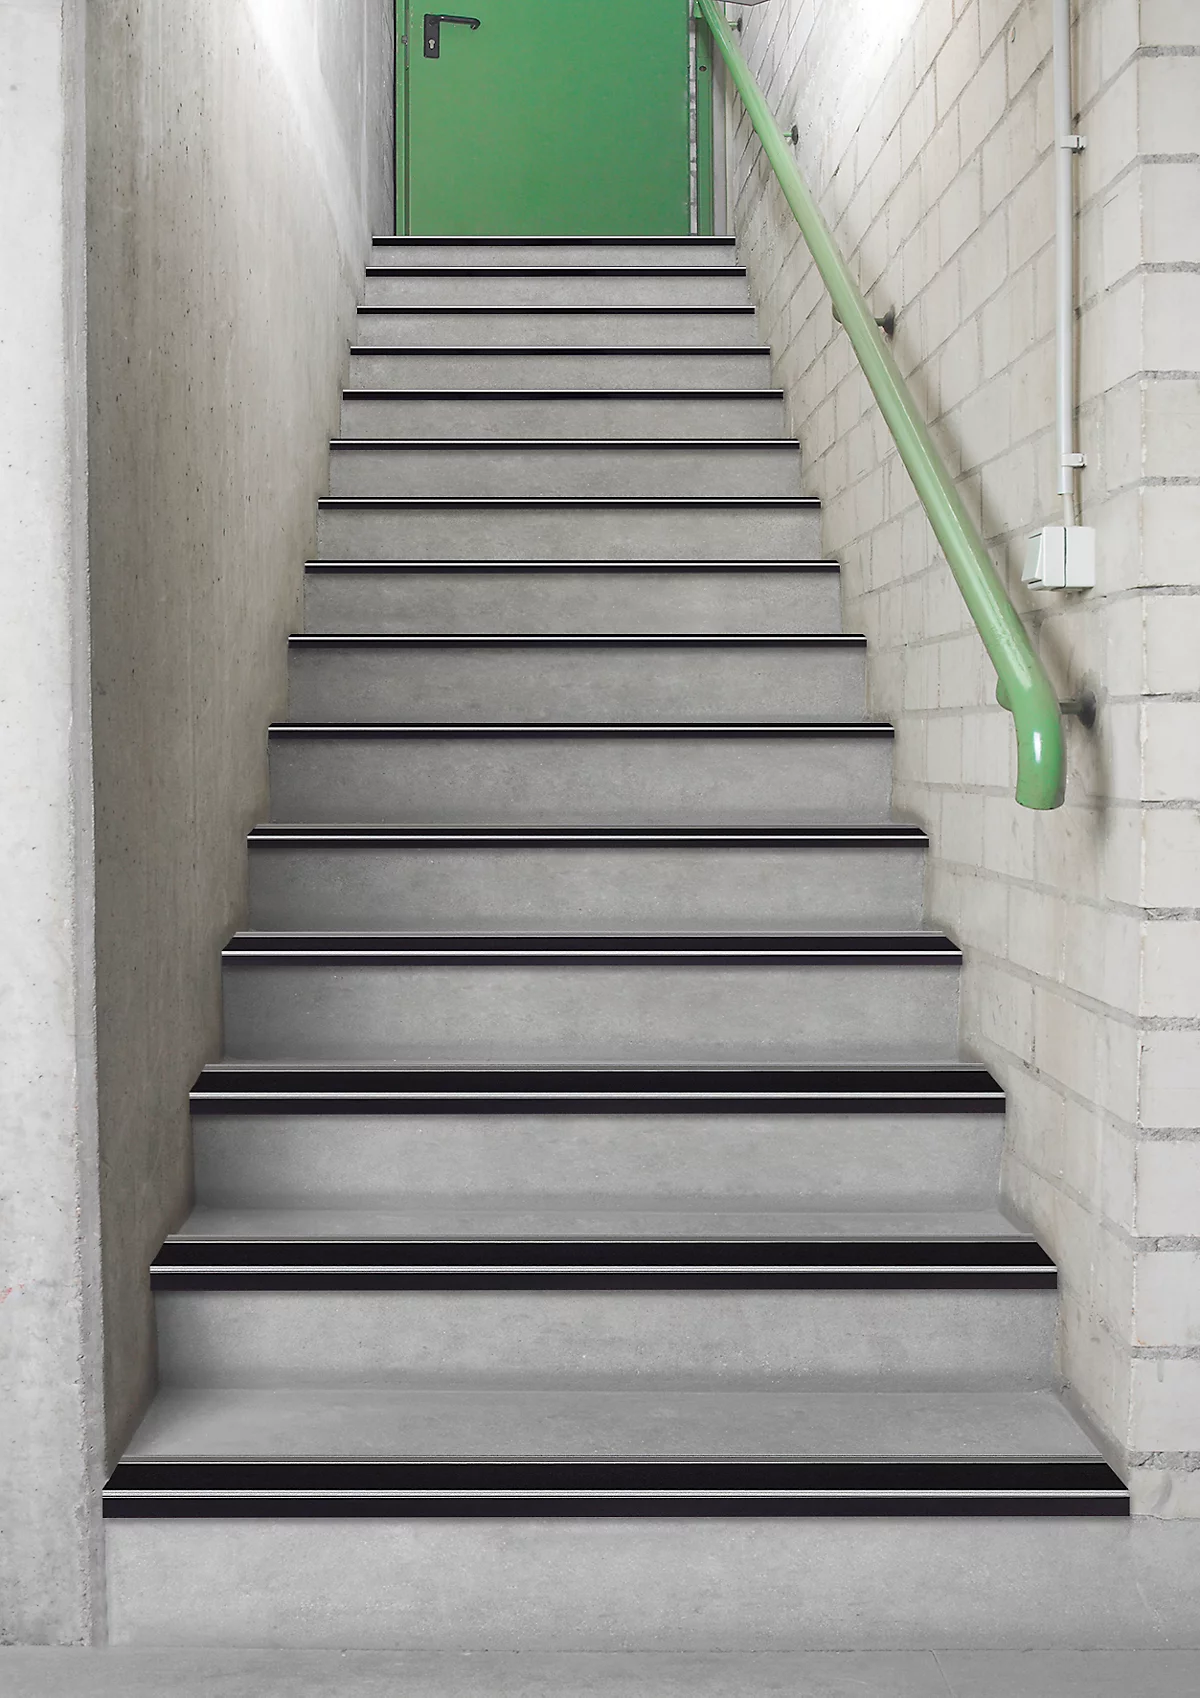 Stufenprofile CleanGrip, Klebevariante, zur Markierung von Treppenstufen nach DIN 18040, L 1000 x B 60 x H 30 mm, schwarz